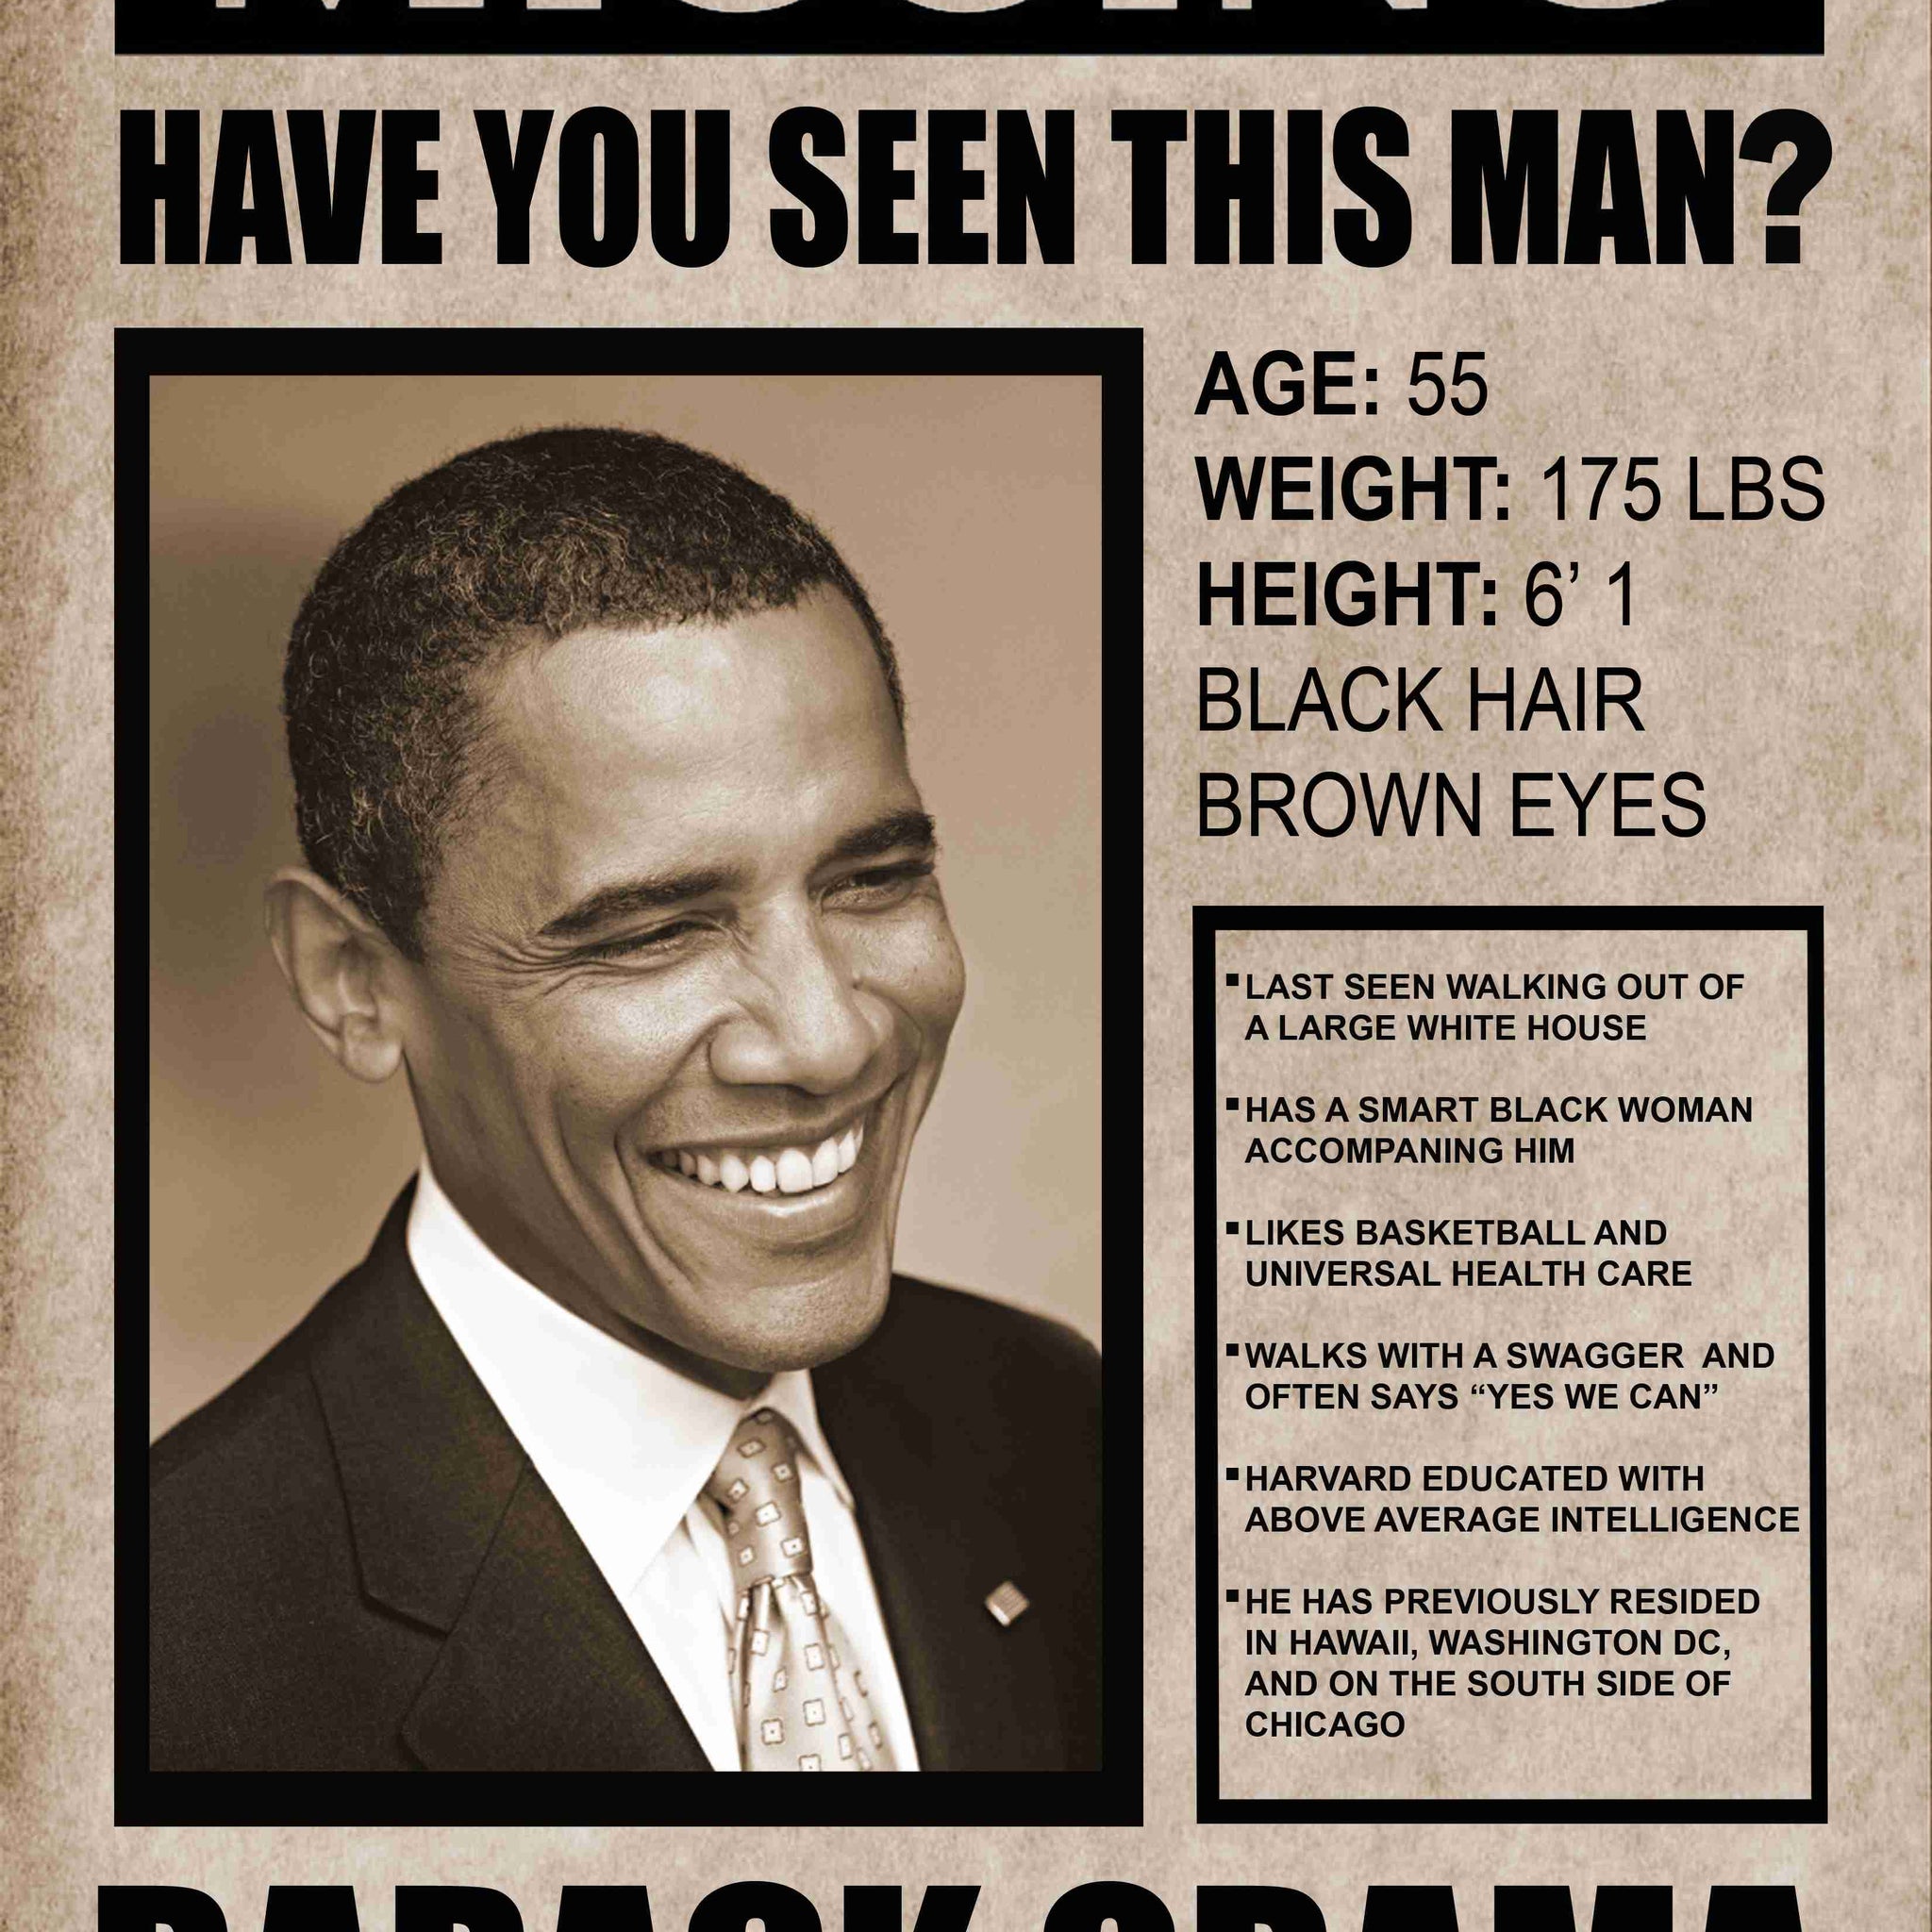 President Barack Obama, Missing In Action